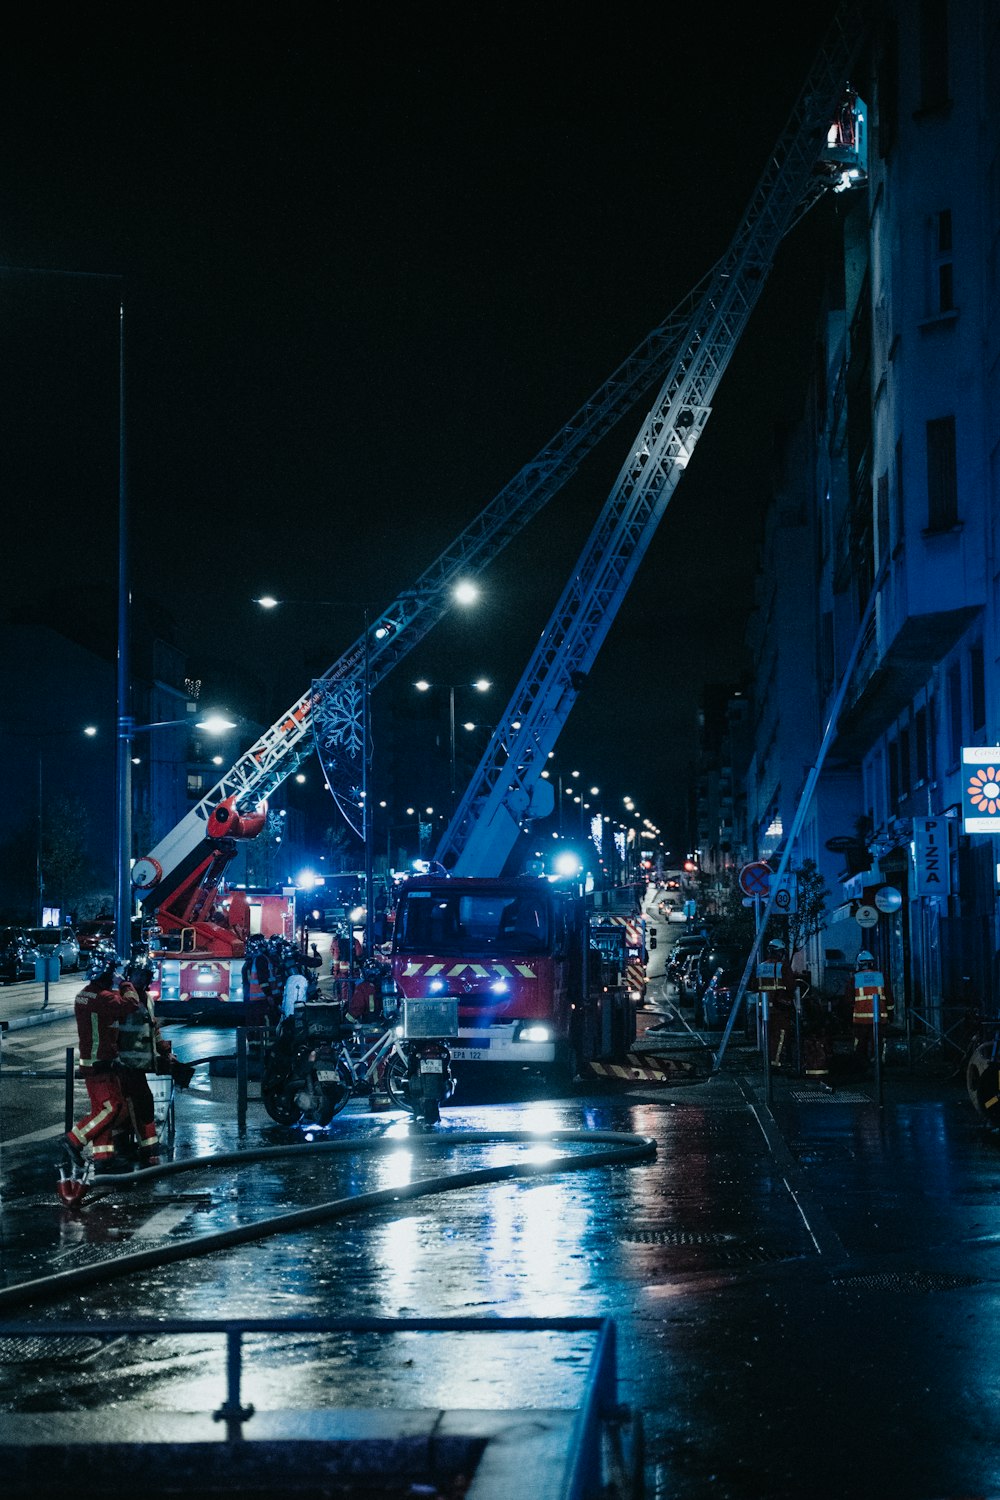 Un camion dei pompieri e un camion dei pompieri su una strada della città di notte